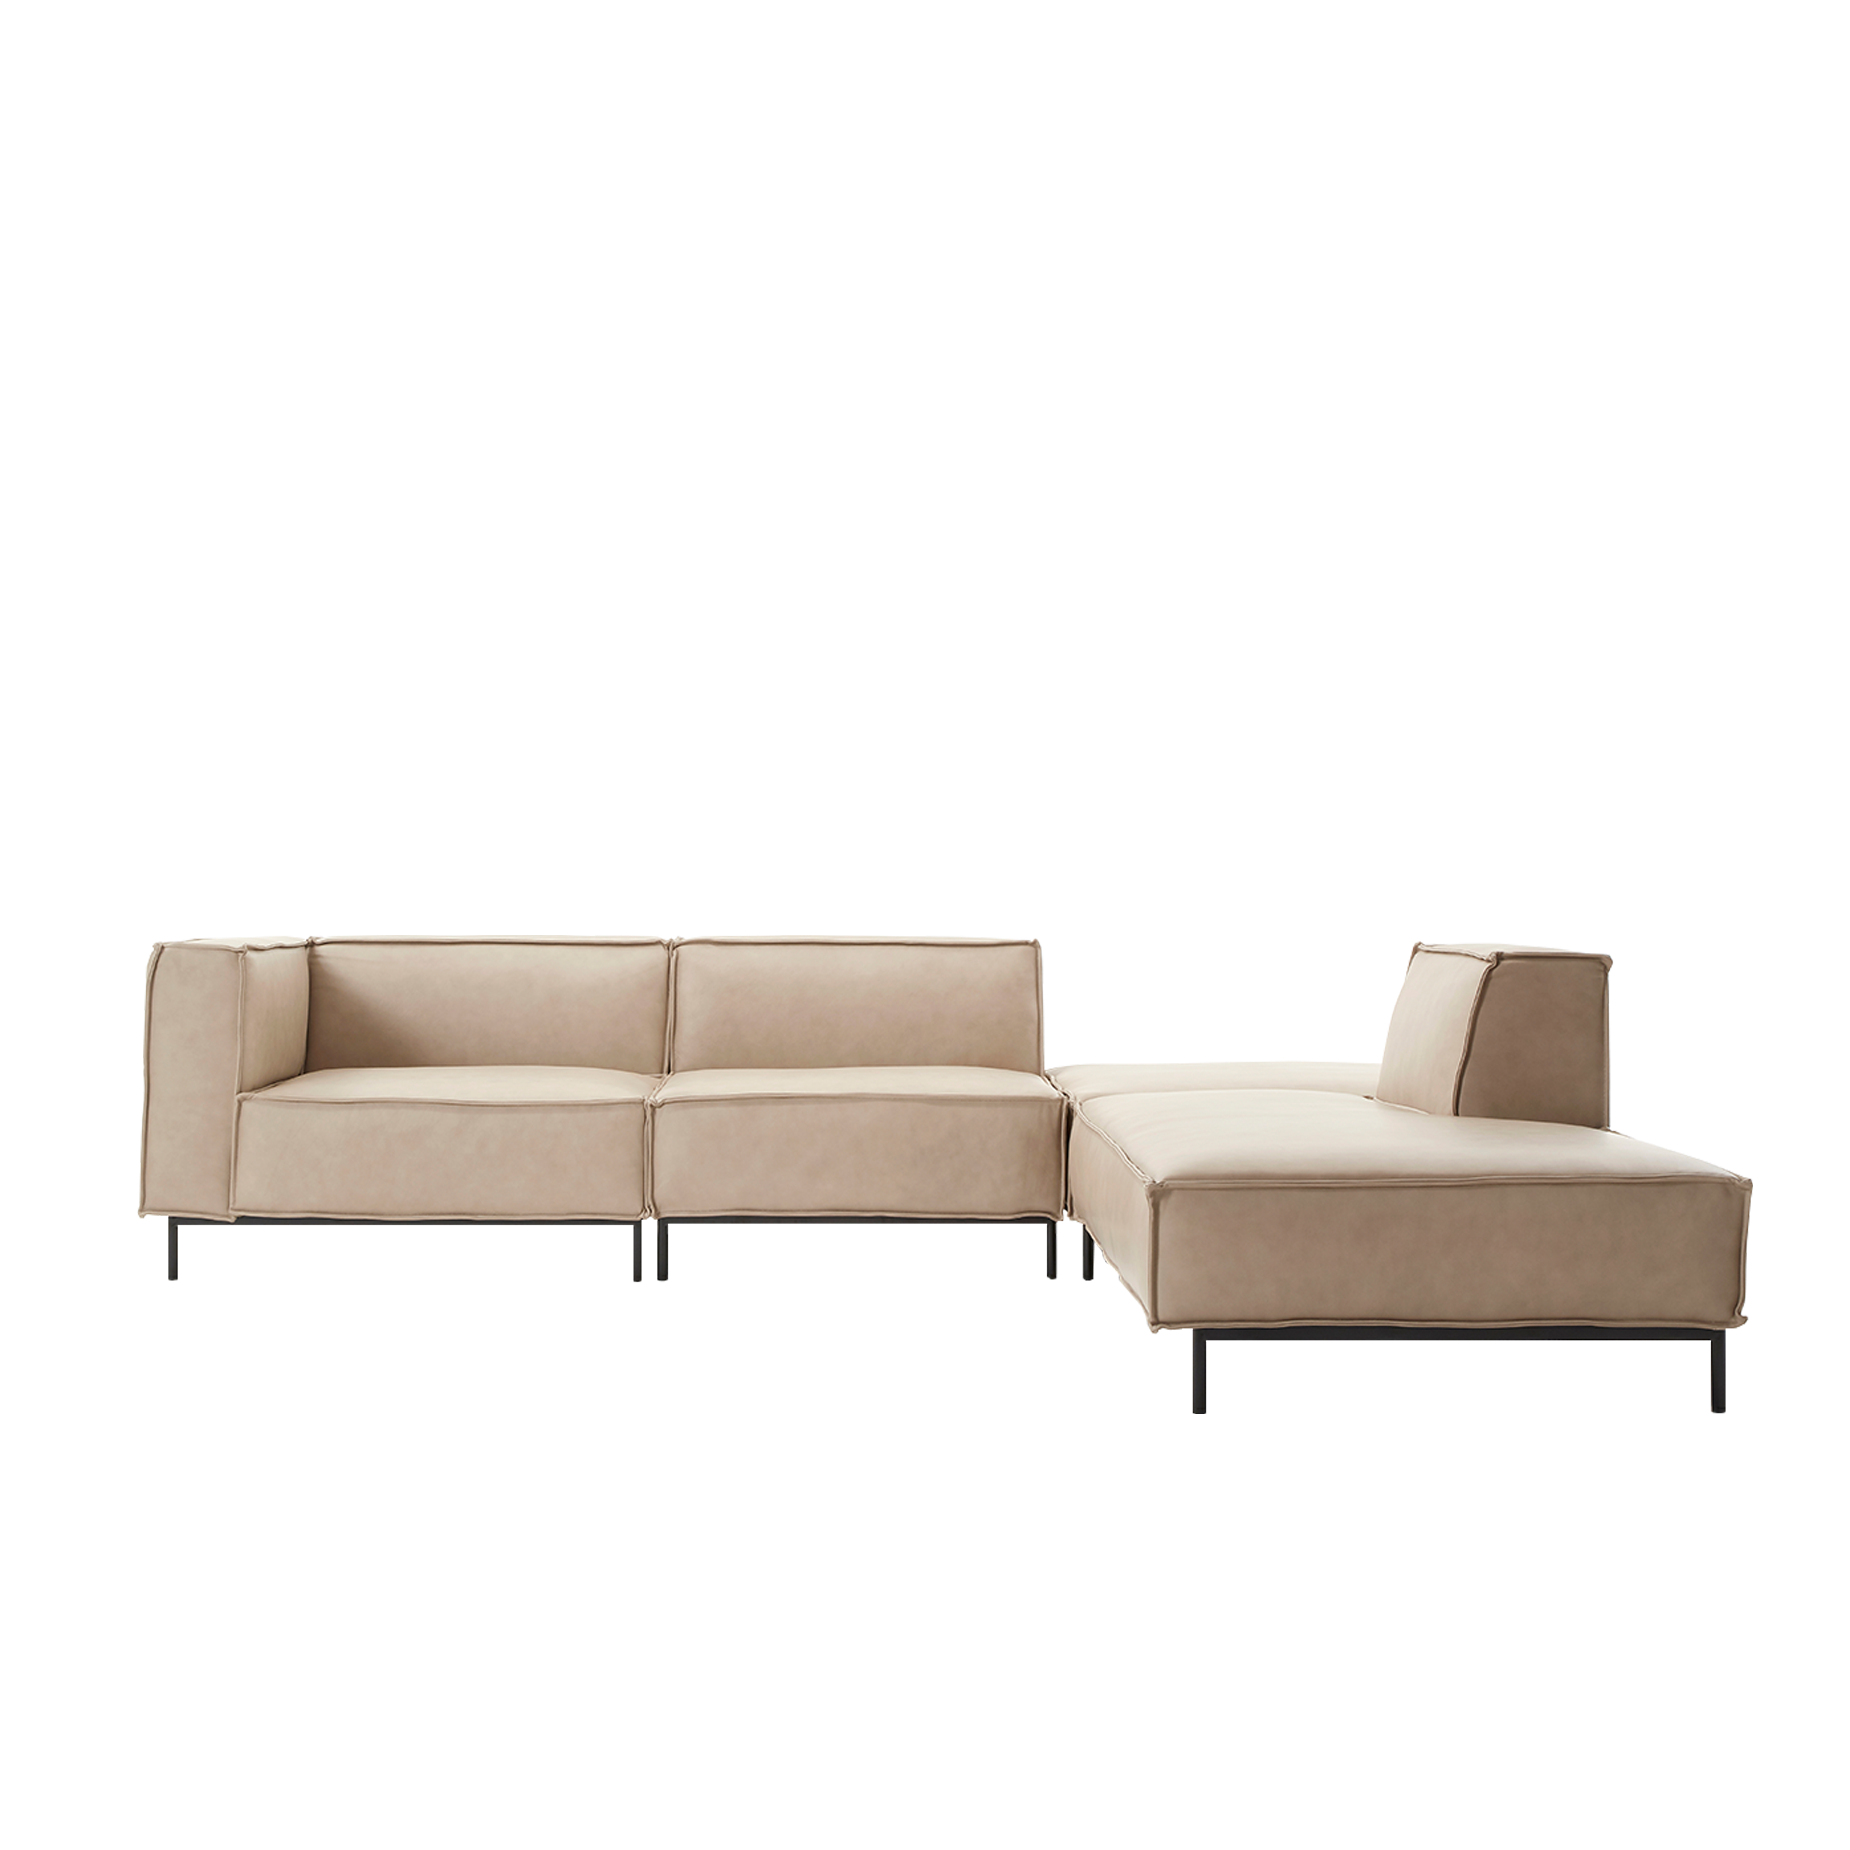 (주)도이치 DOICH ®    PEN20 modular couch sofa 도이치 펜20 4인 카우치 모듈소파 + 스툴  [4주 주문제작]